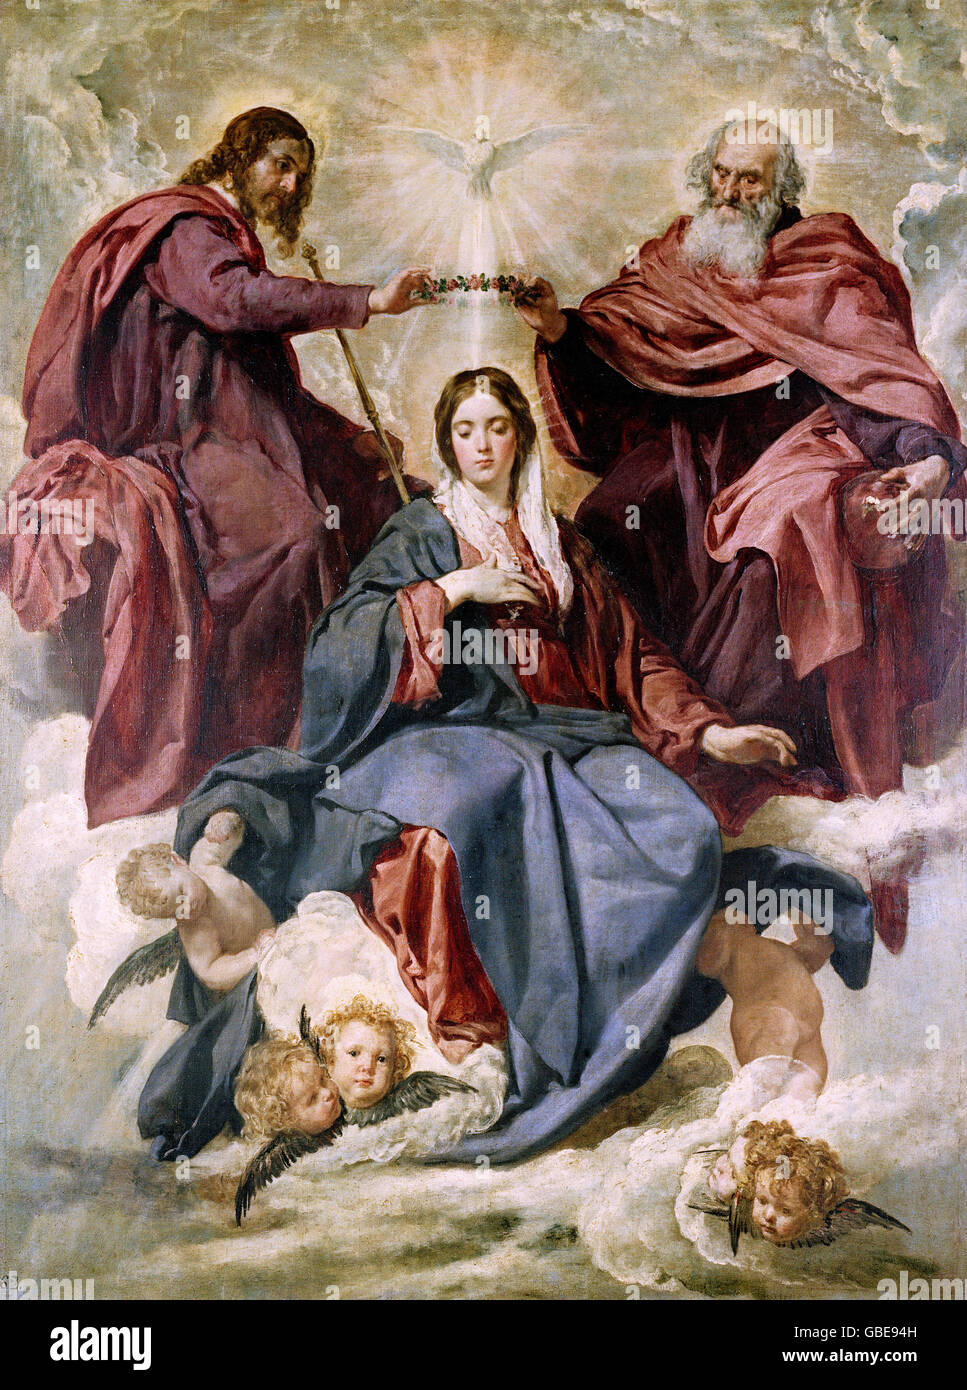 fine arts, Velazquez, Diego Rodriguez de Silva y (1599 - 1660), painting 'Coronacion de la Virgen' (The Coronation of the Virgin), 1641 - 1644, oil on canvas, Prado, Madrid, Stock Photo